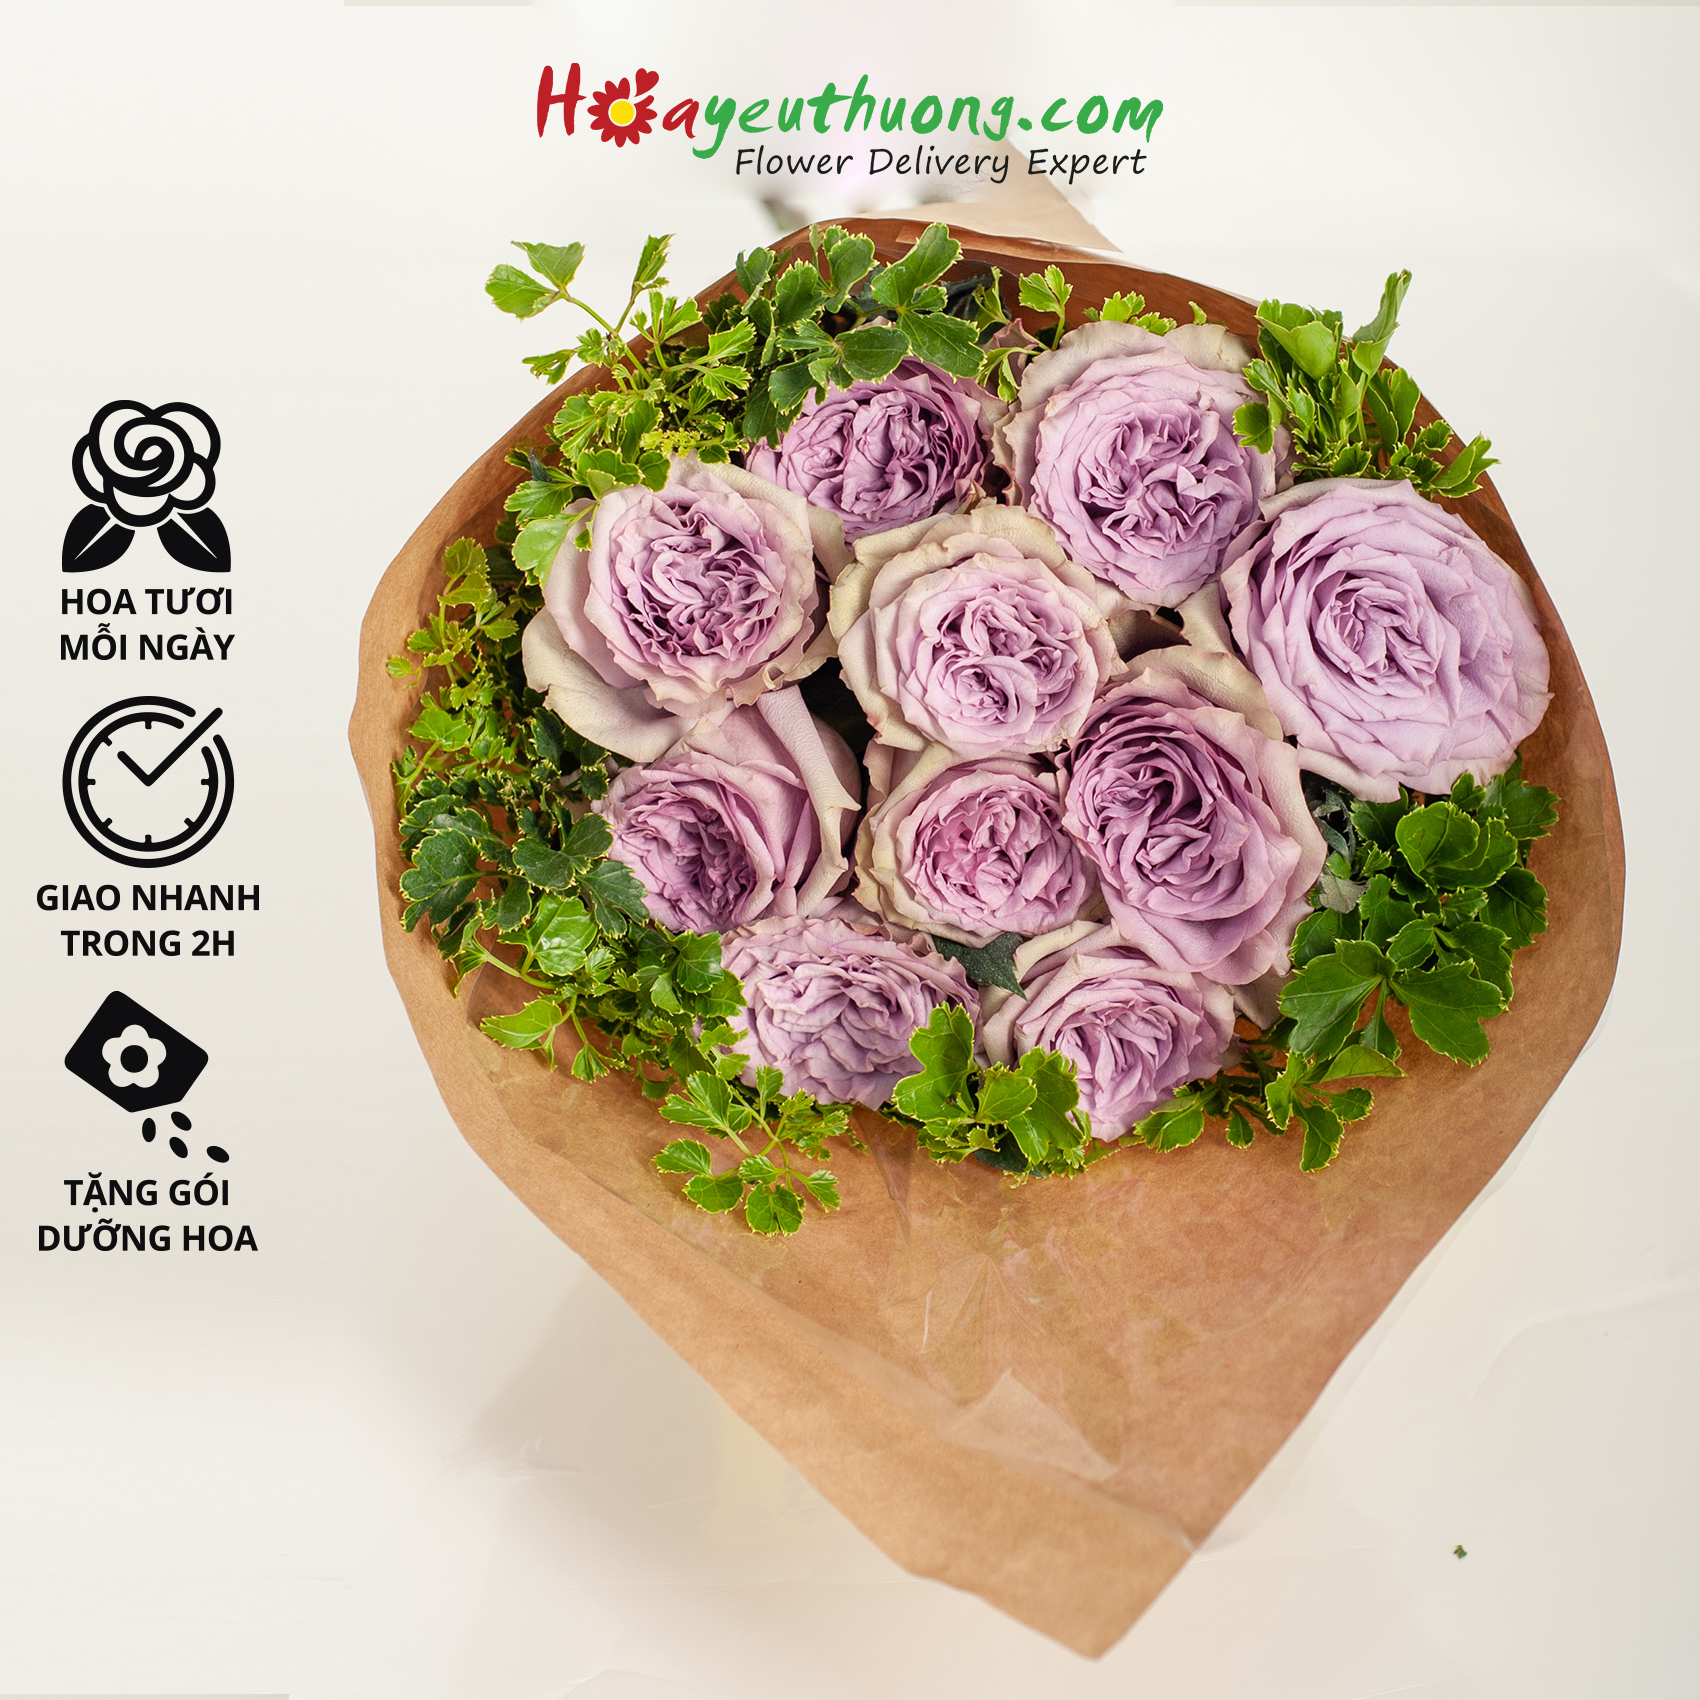 Purple O hara - Combo hoa mix sẵn Hoayeuthuong, hoa Đà Lạt tươi cắm trang trí nhà cửa, văn phòng